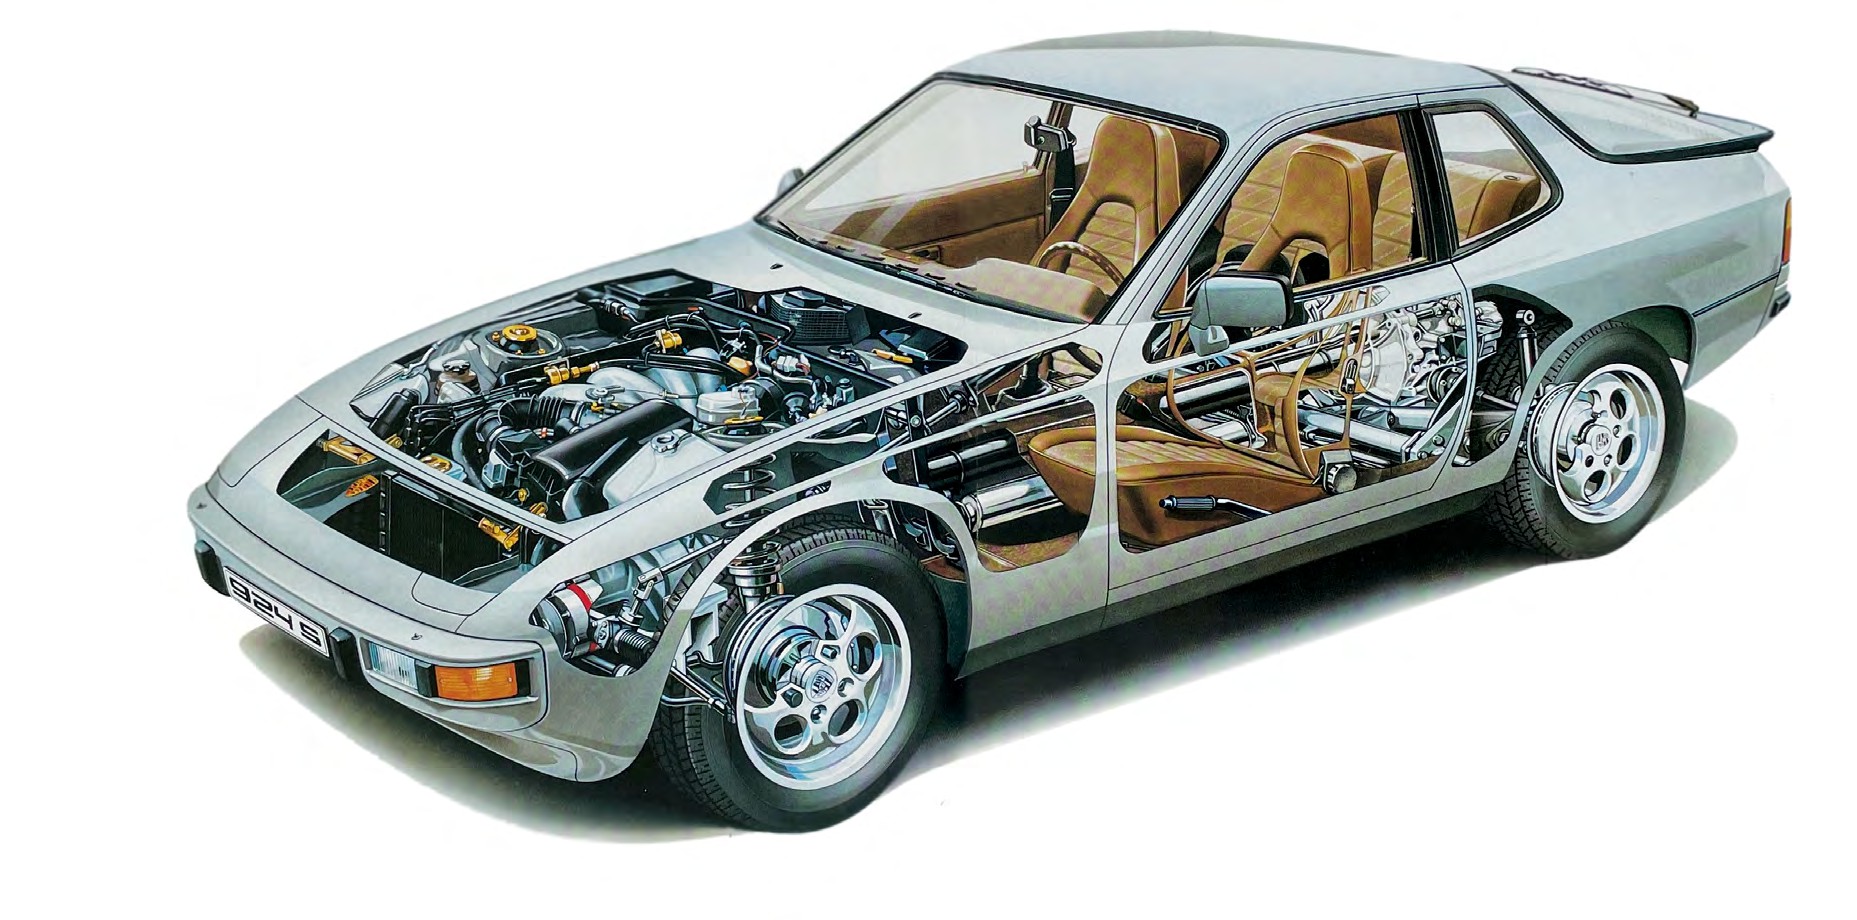 Öldrucksensor für Porsche 924, 944, 928 und andere